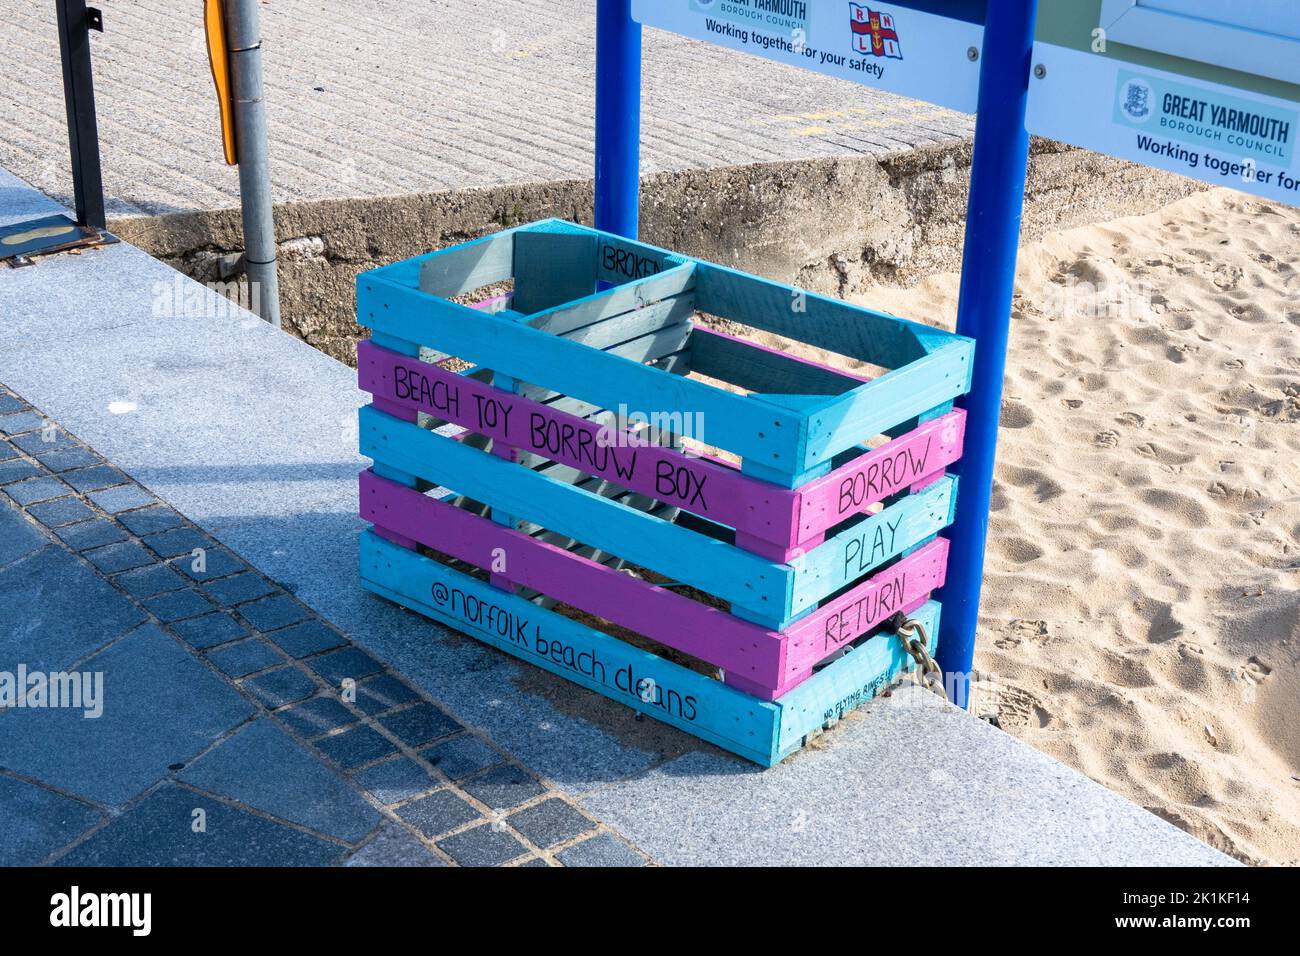 Beach Toy borrow box on Great Yarmouth parade sea front Stock Photo